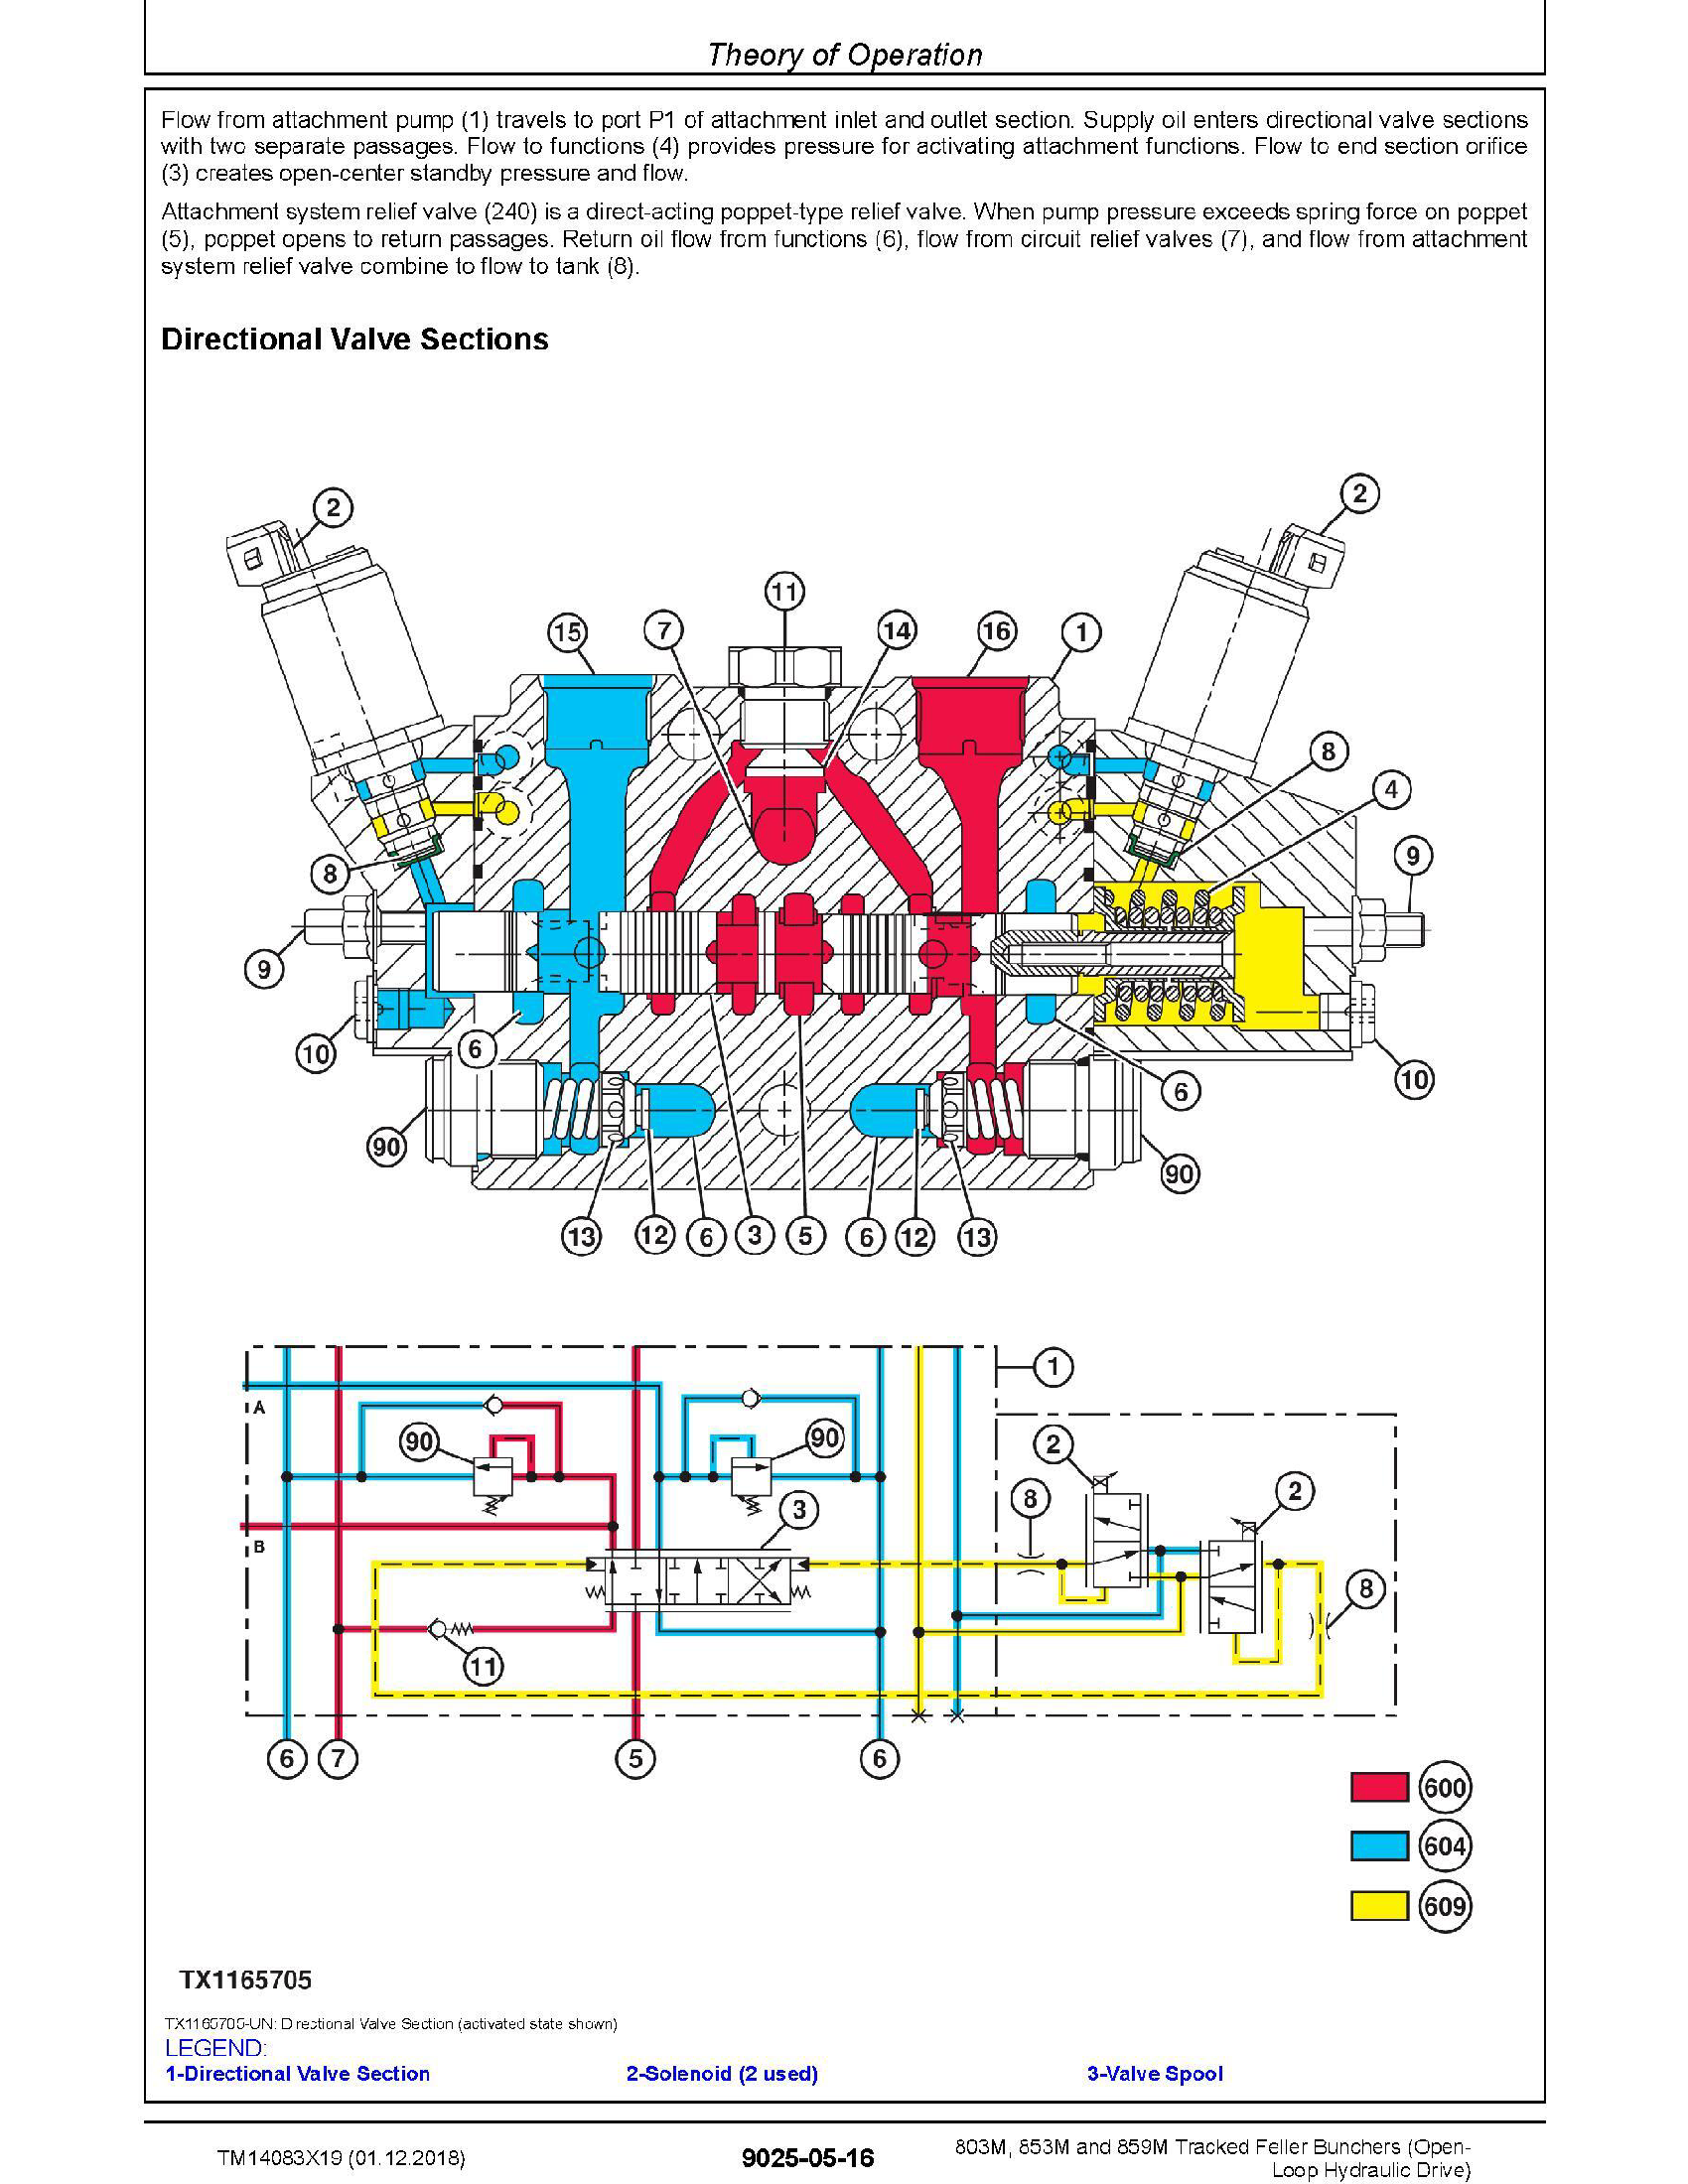 John Deere 843K manual pdf